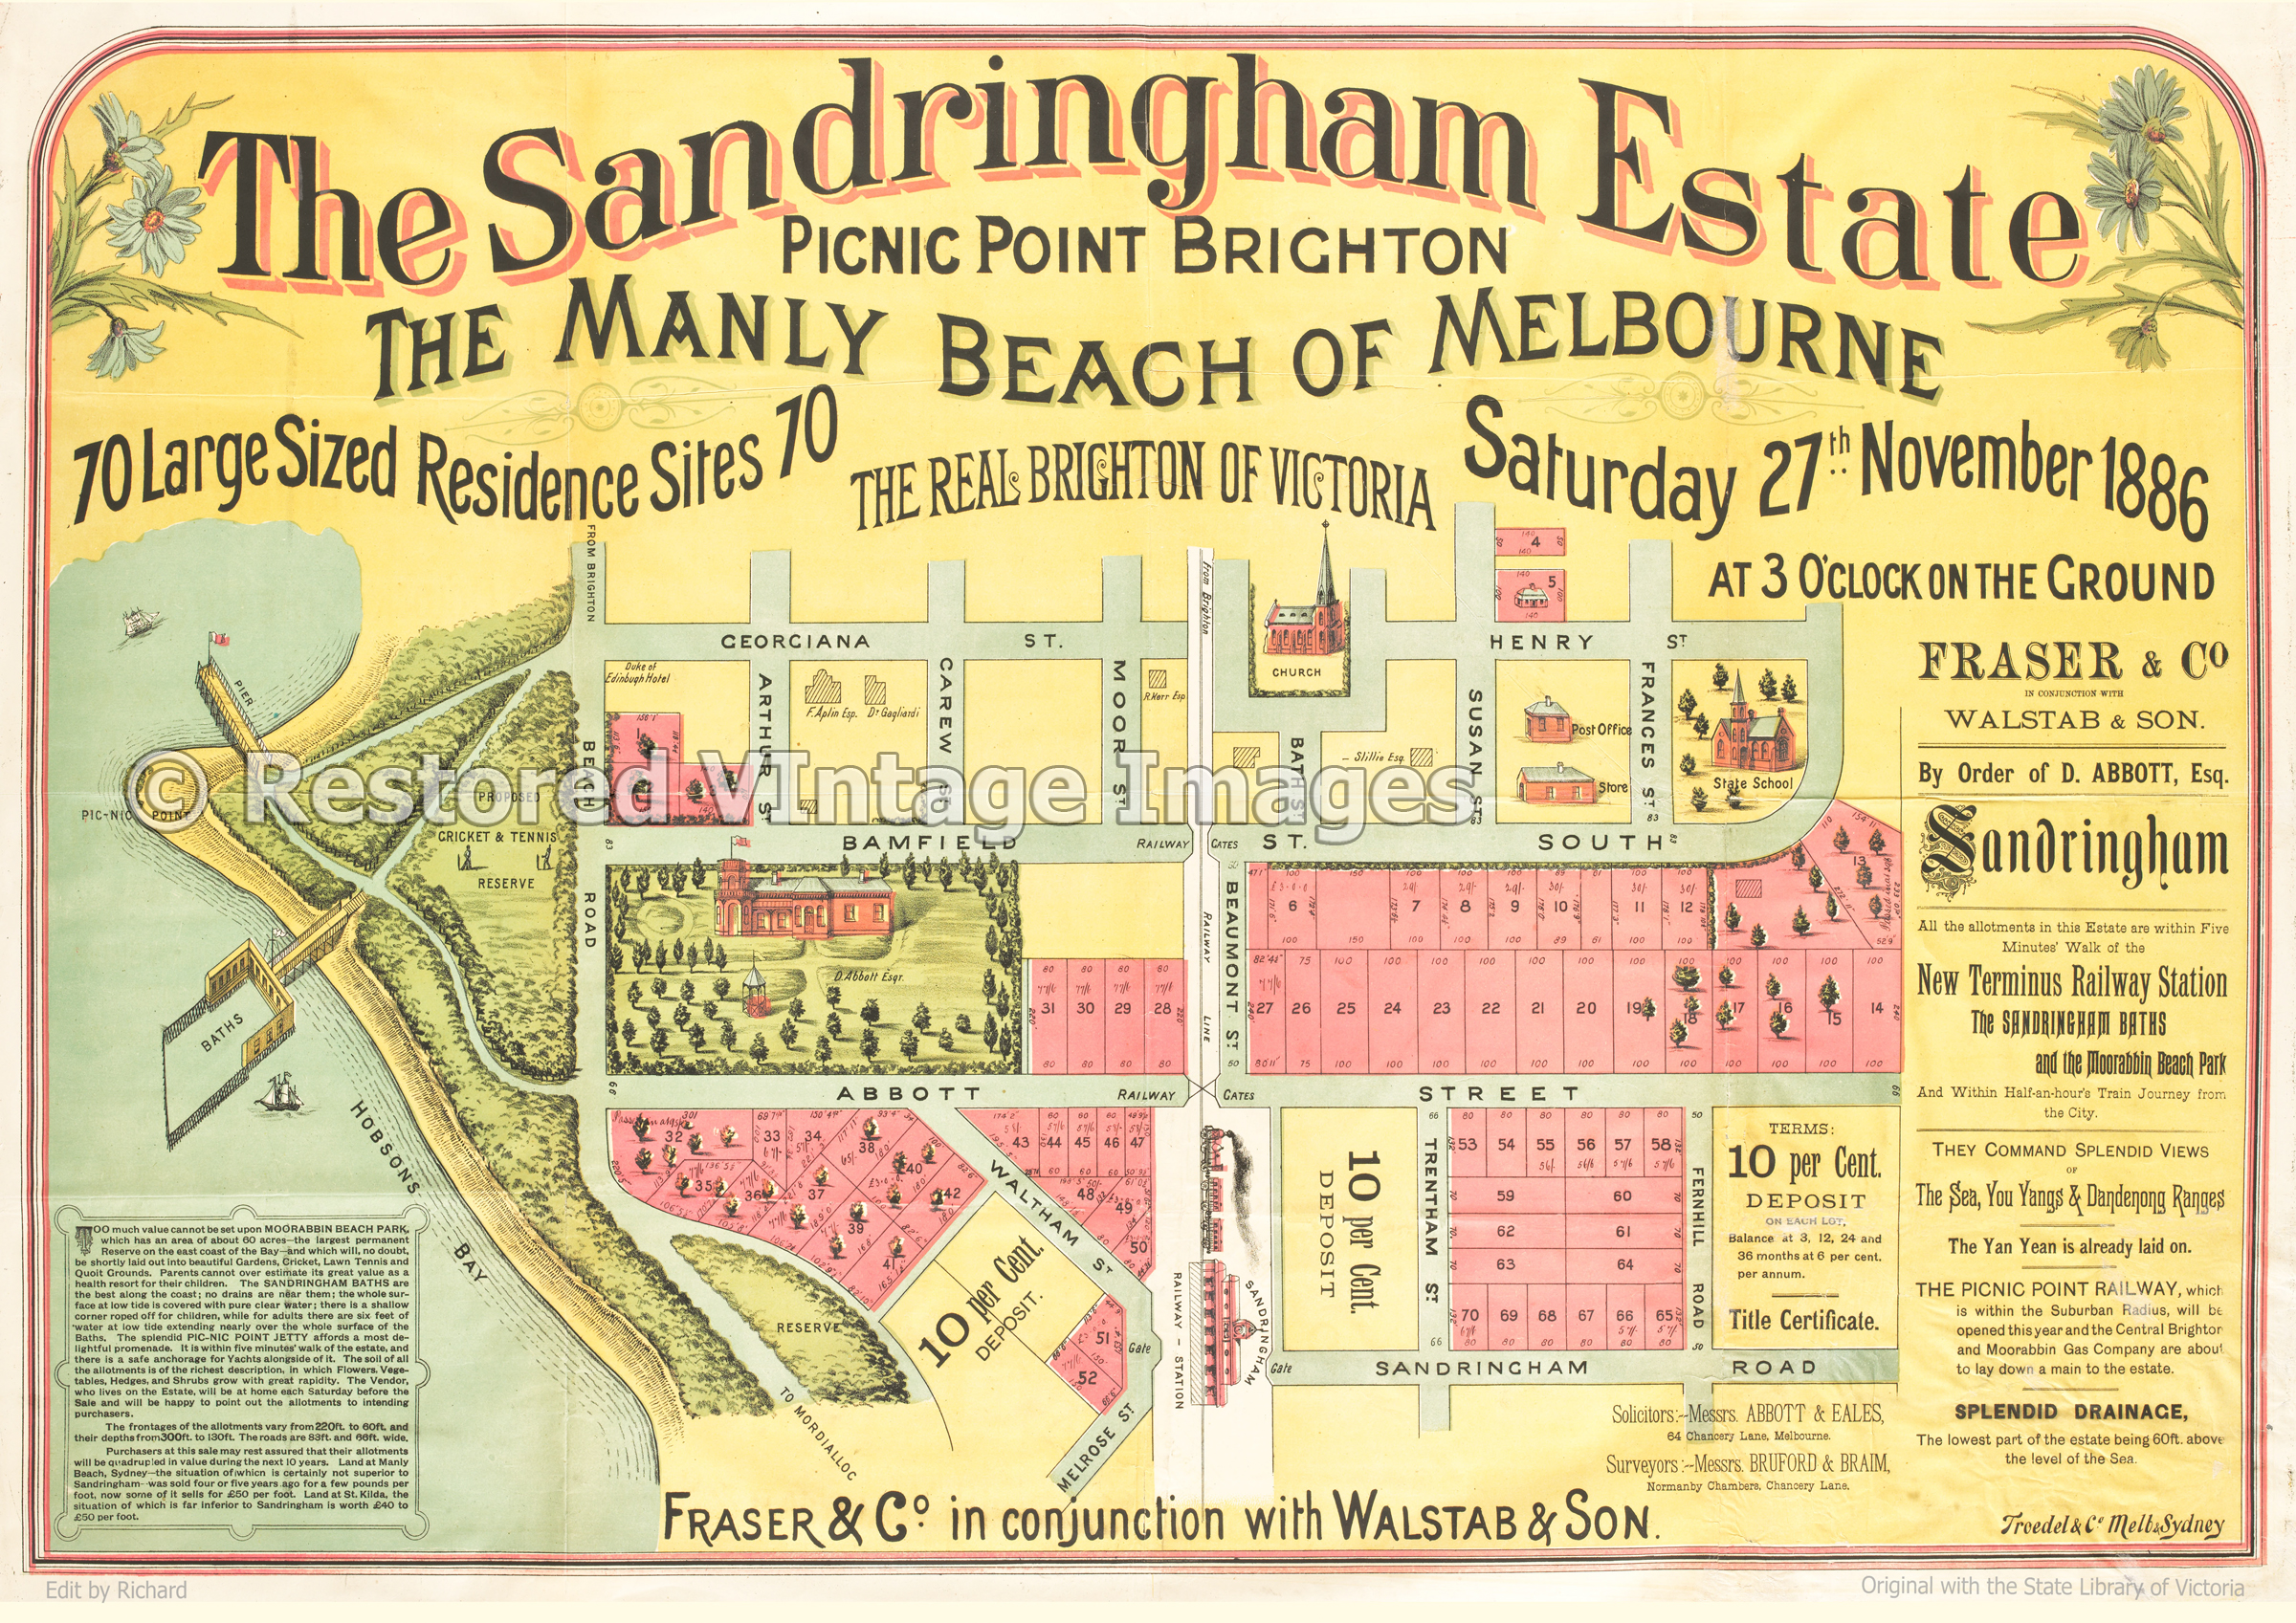 Sandringham Estate Picnic Point Brighton 1886 – Sandringham